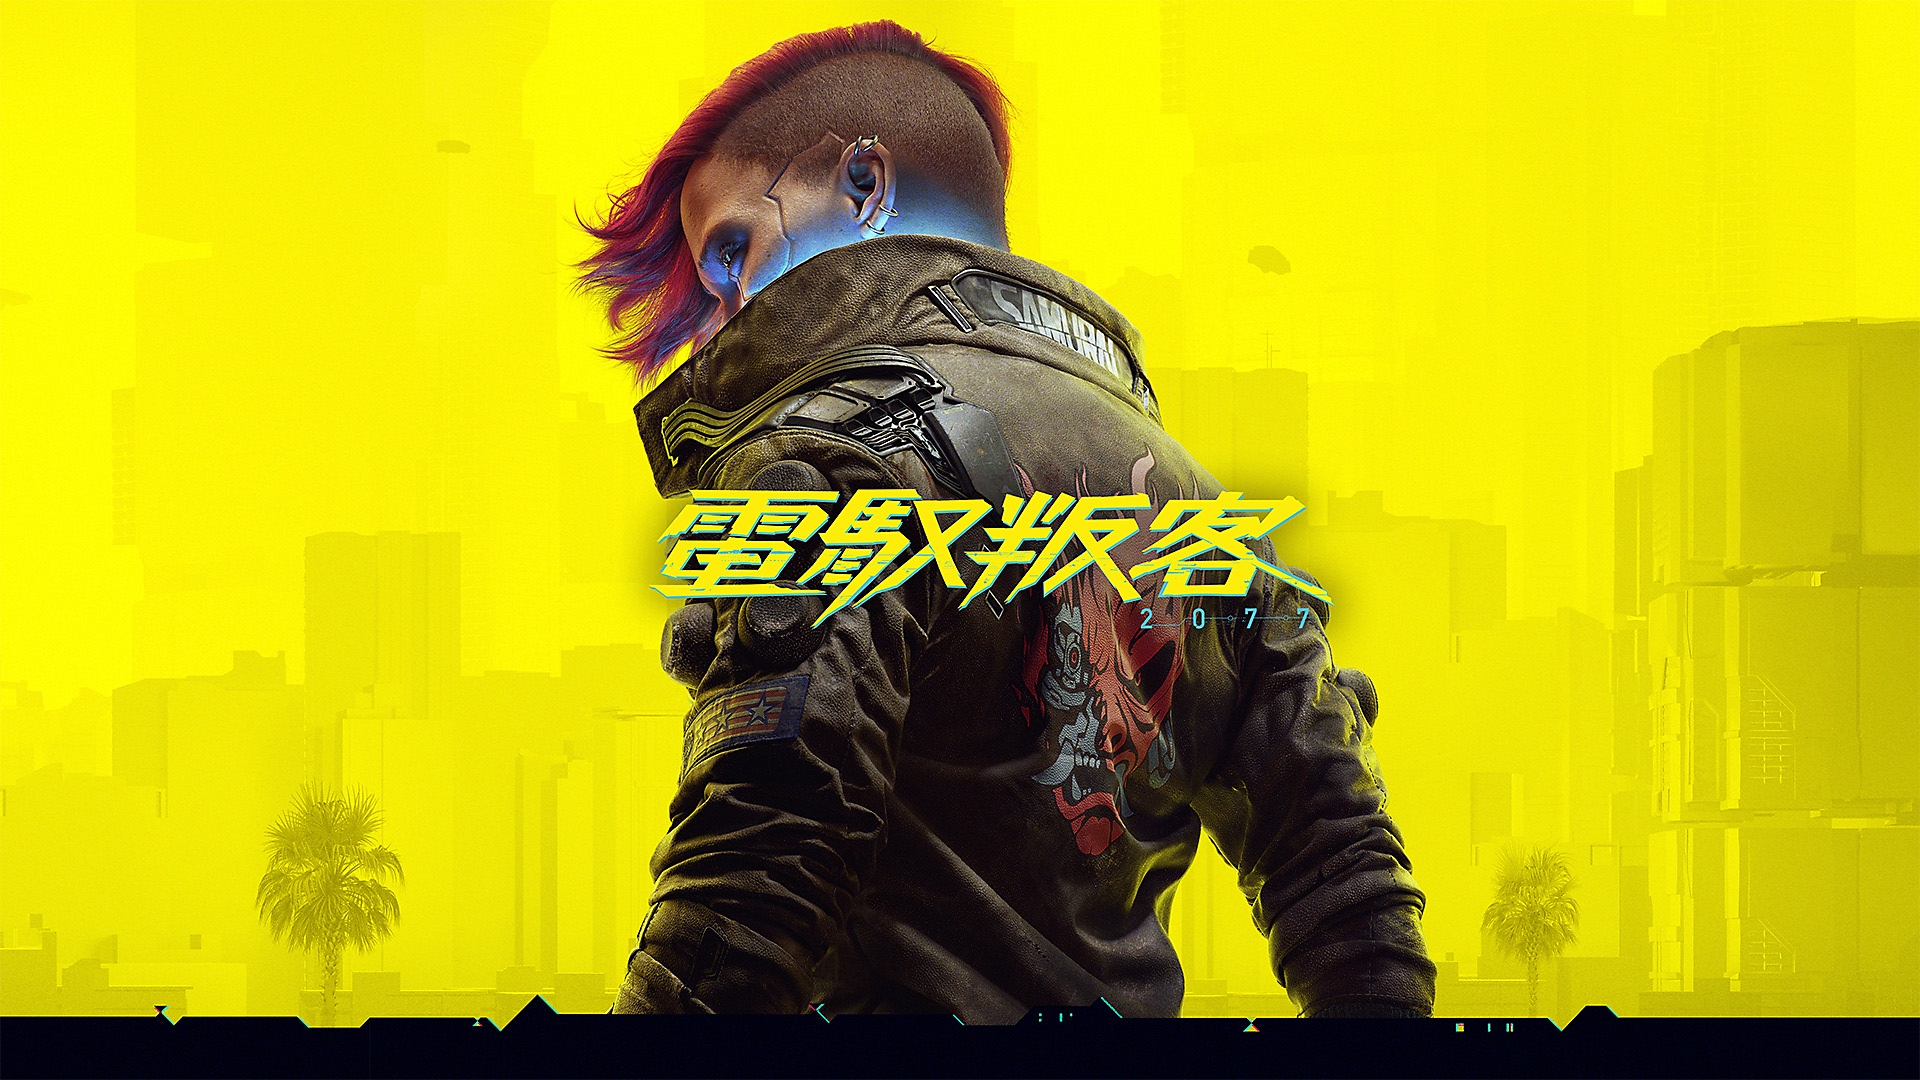 Cyberpunk 2077 - Next-Gen Update Launch Trailer | PS5